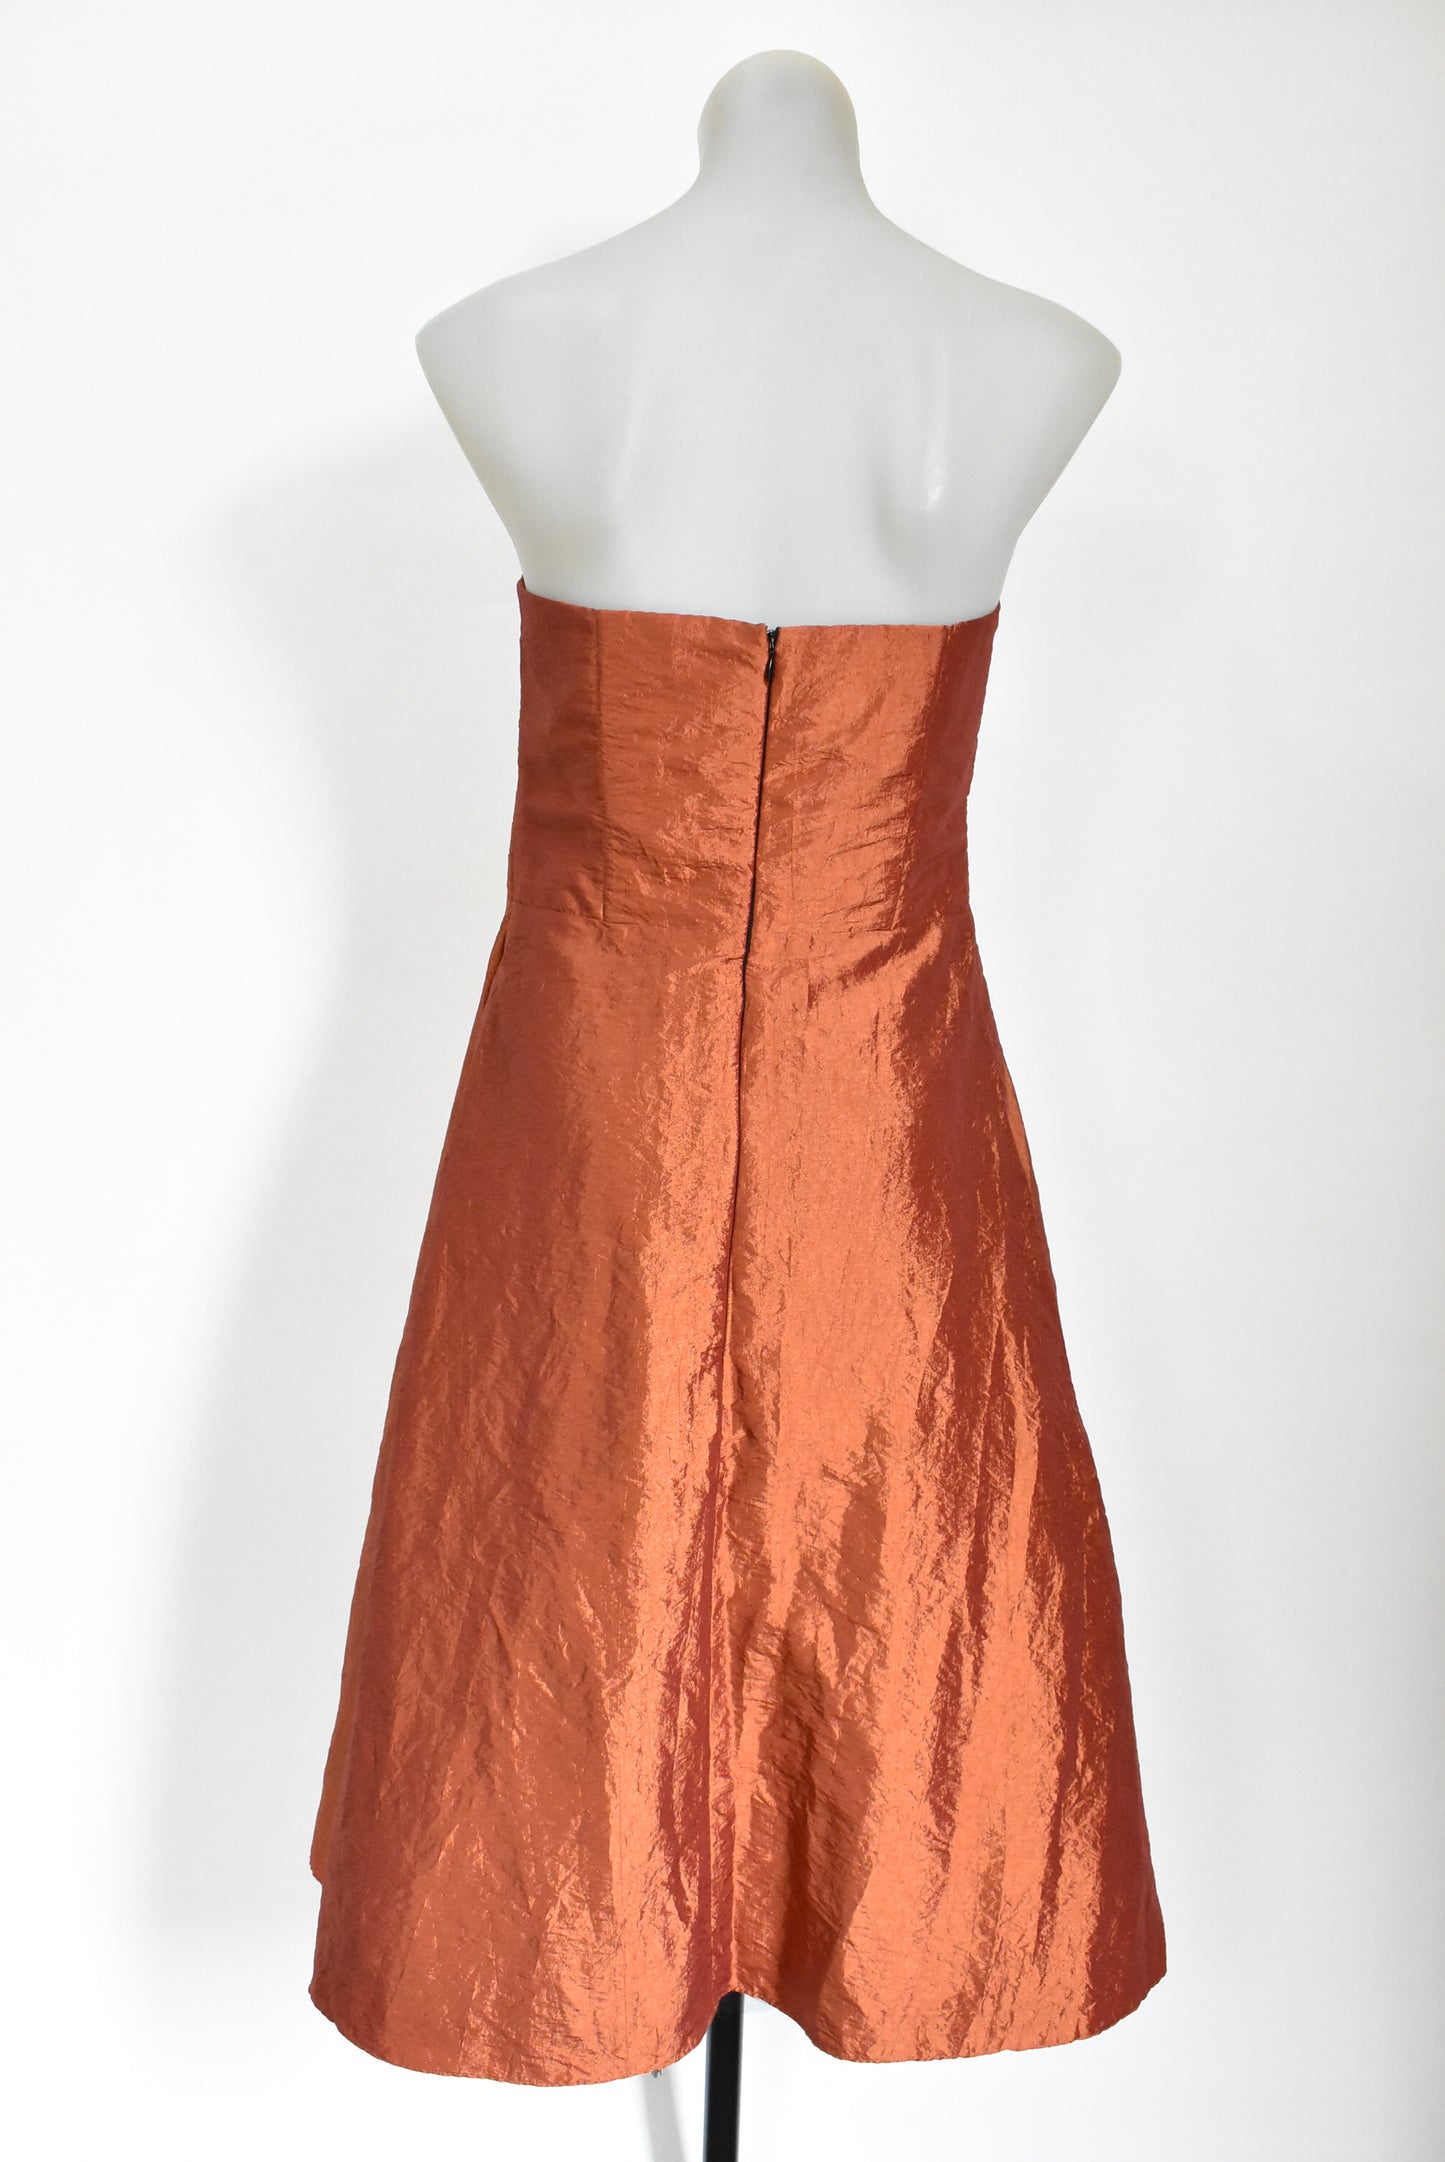 Jetaime retro strapless copper evening dress, 14